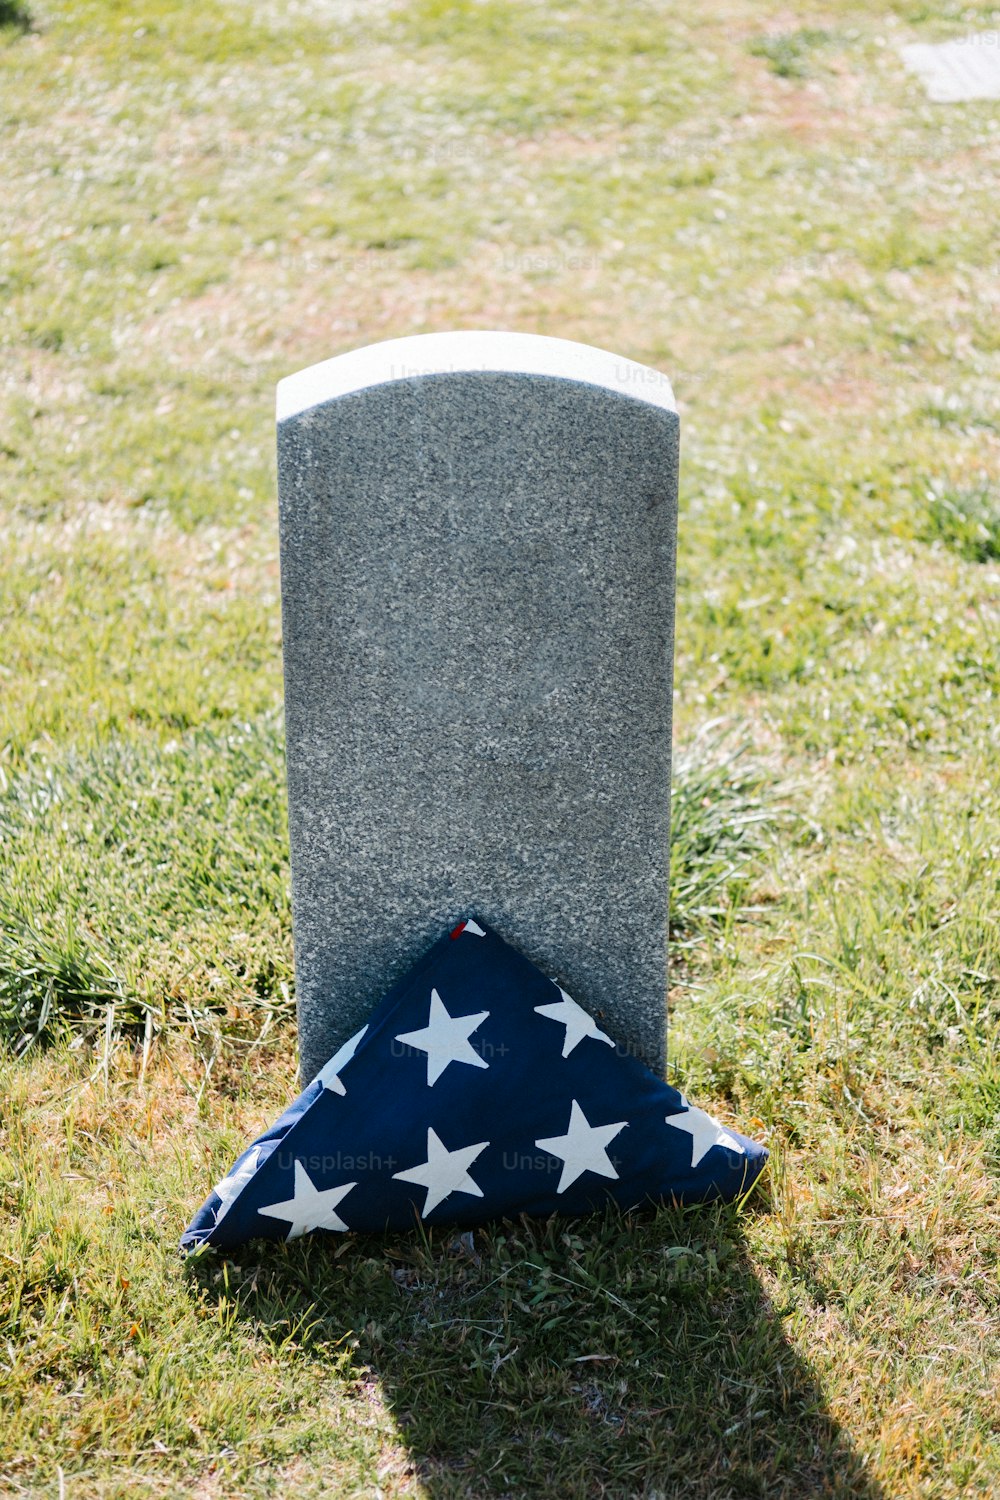 eine Fahne, die neben einem Grab auf dem Boden liegt